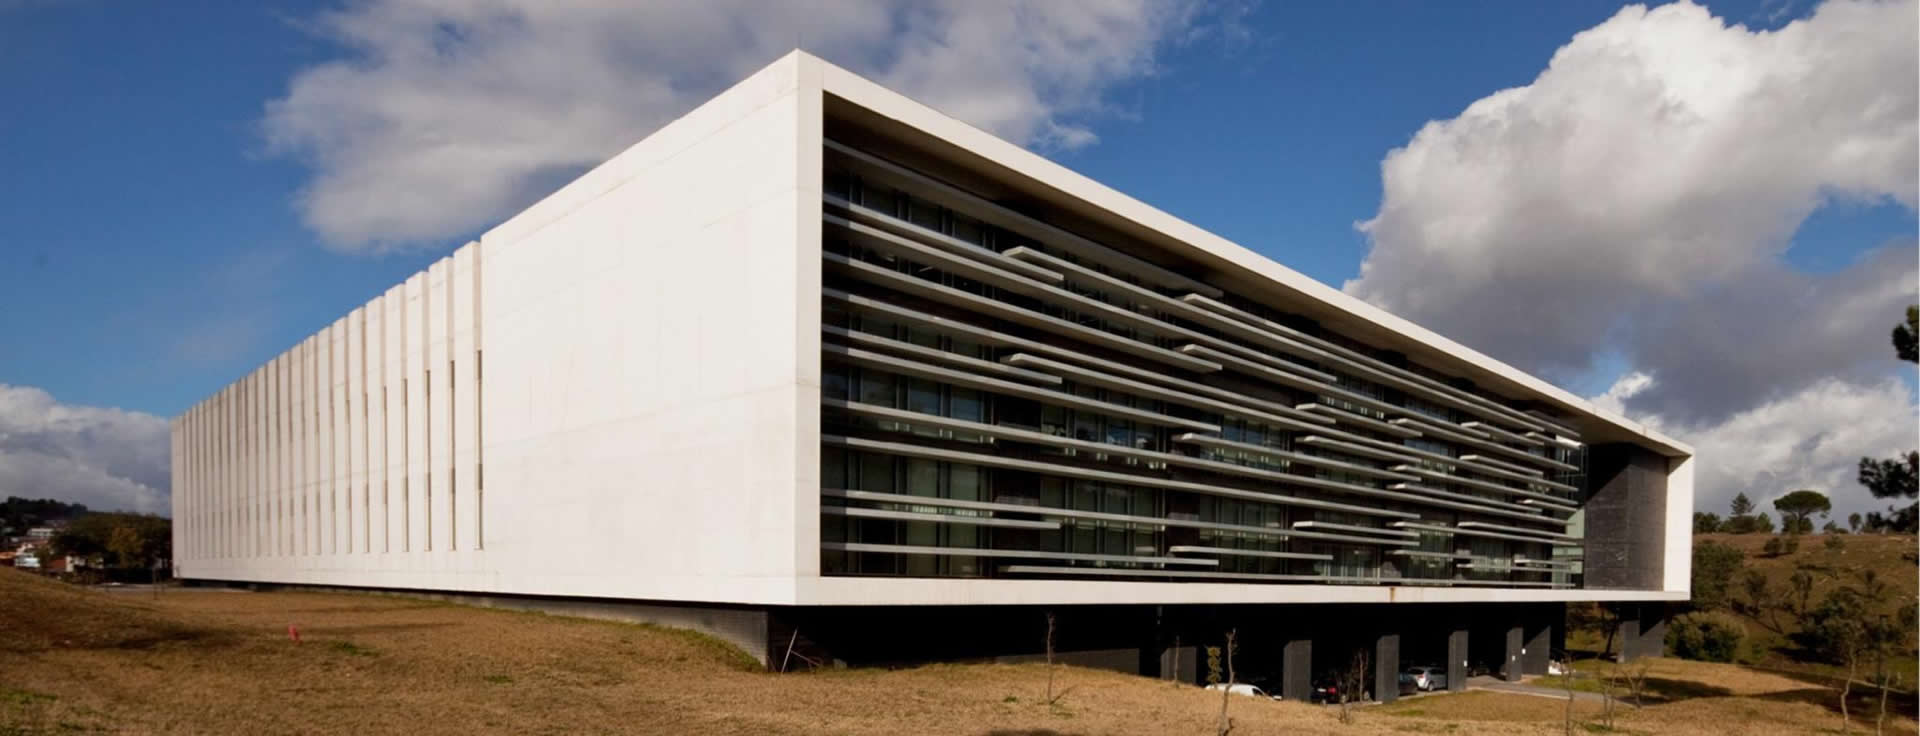 Escola de Medicina da Universidade do Minho (EM-UM) - Portugal